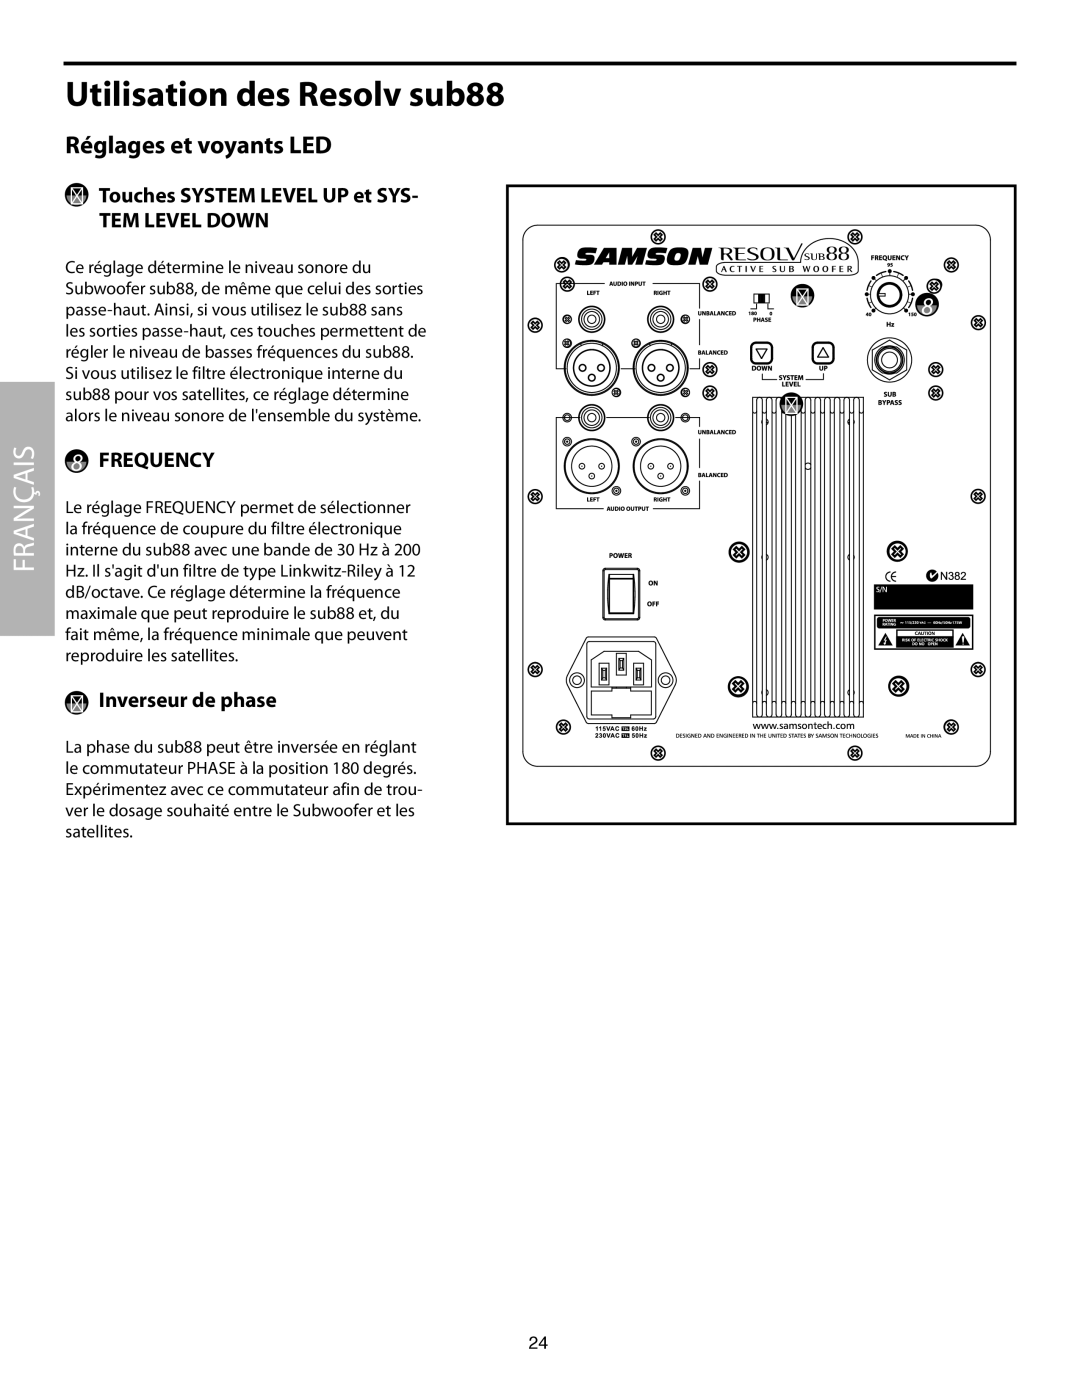 Samson SUB88 manual Réglages et voyants LED, Touches System Level UP et SYS- TEM Level Down, Inverseur de phase 